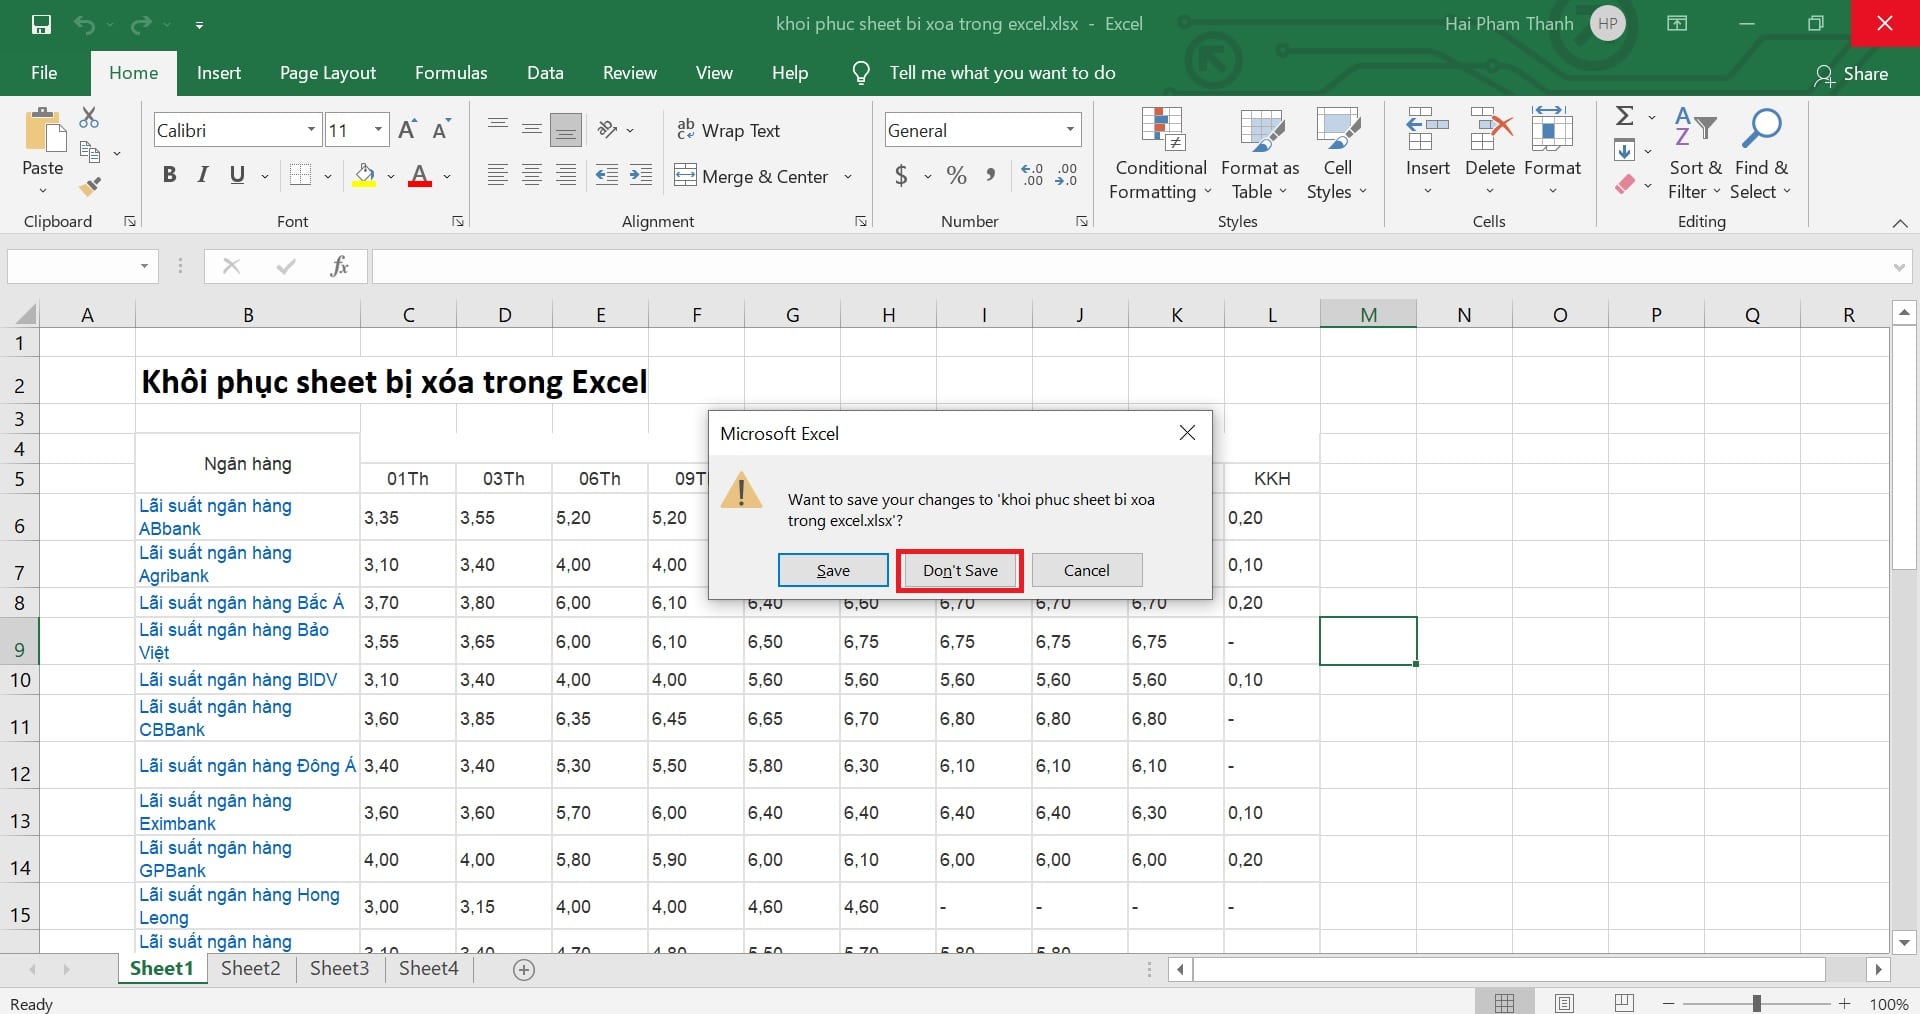 Khôi phục sheet bị xóa trong Excel